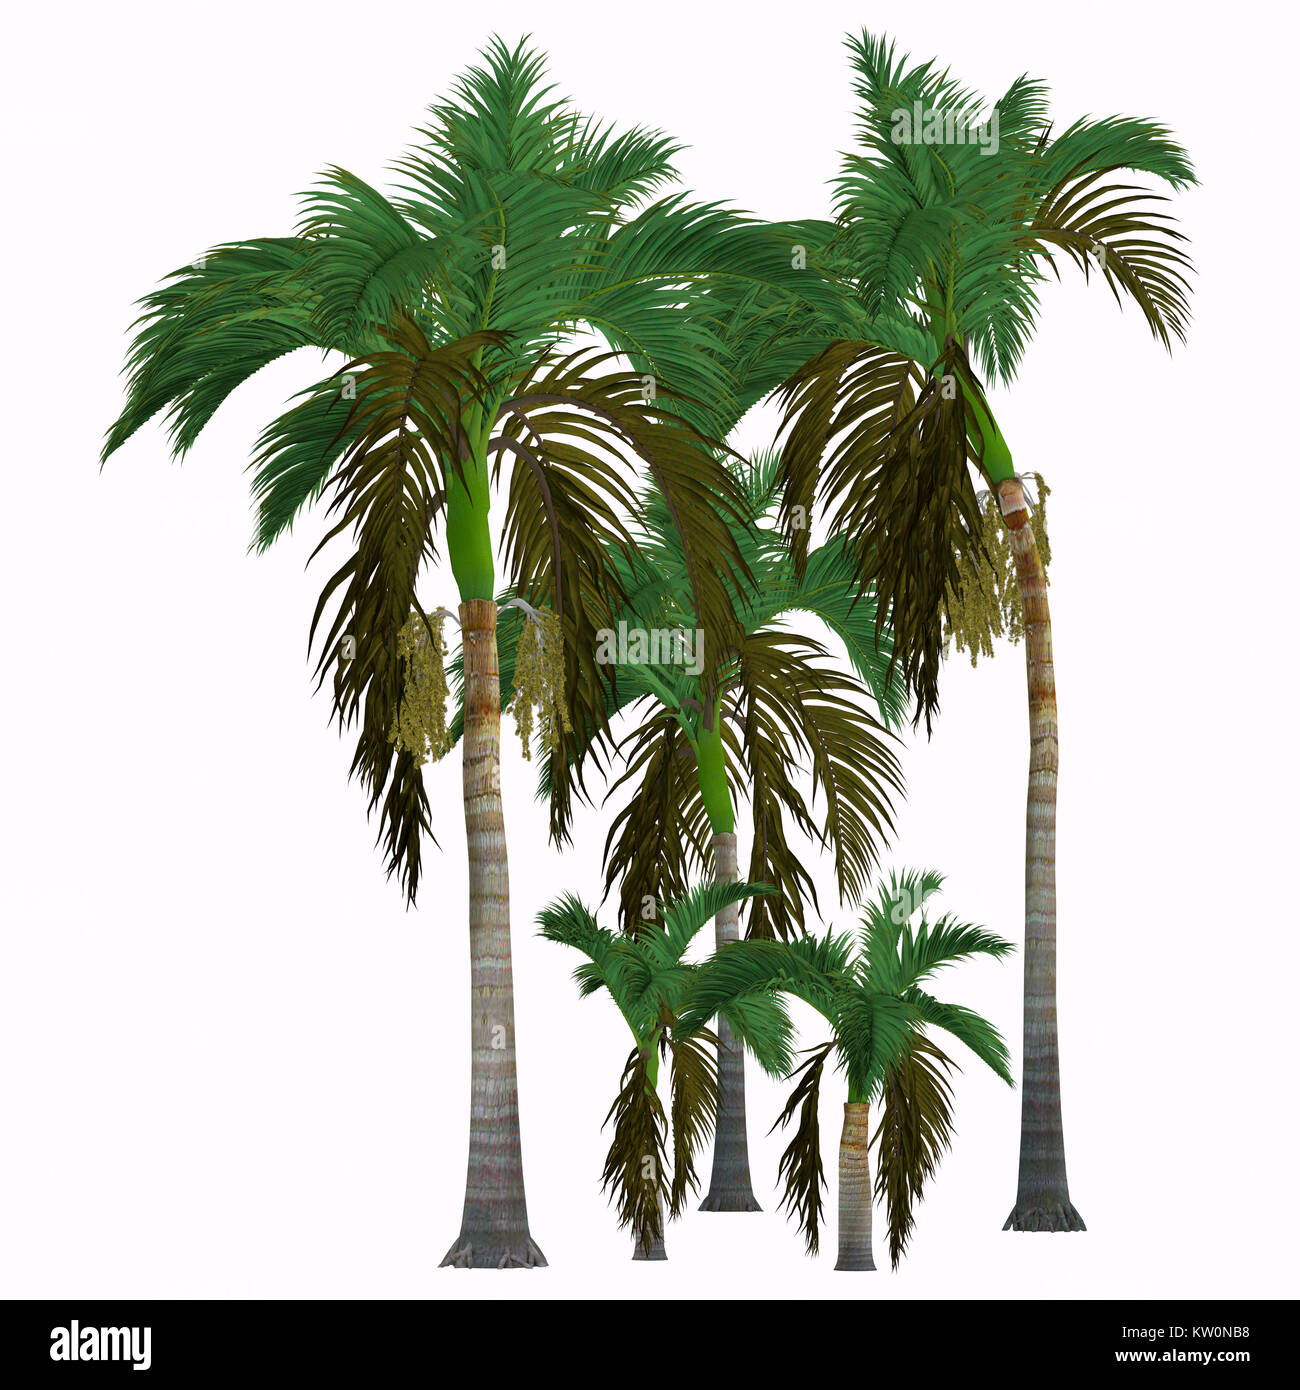 Albero tropicale immagini e fotografie stock ad alta risoluzione - Alamy